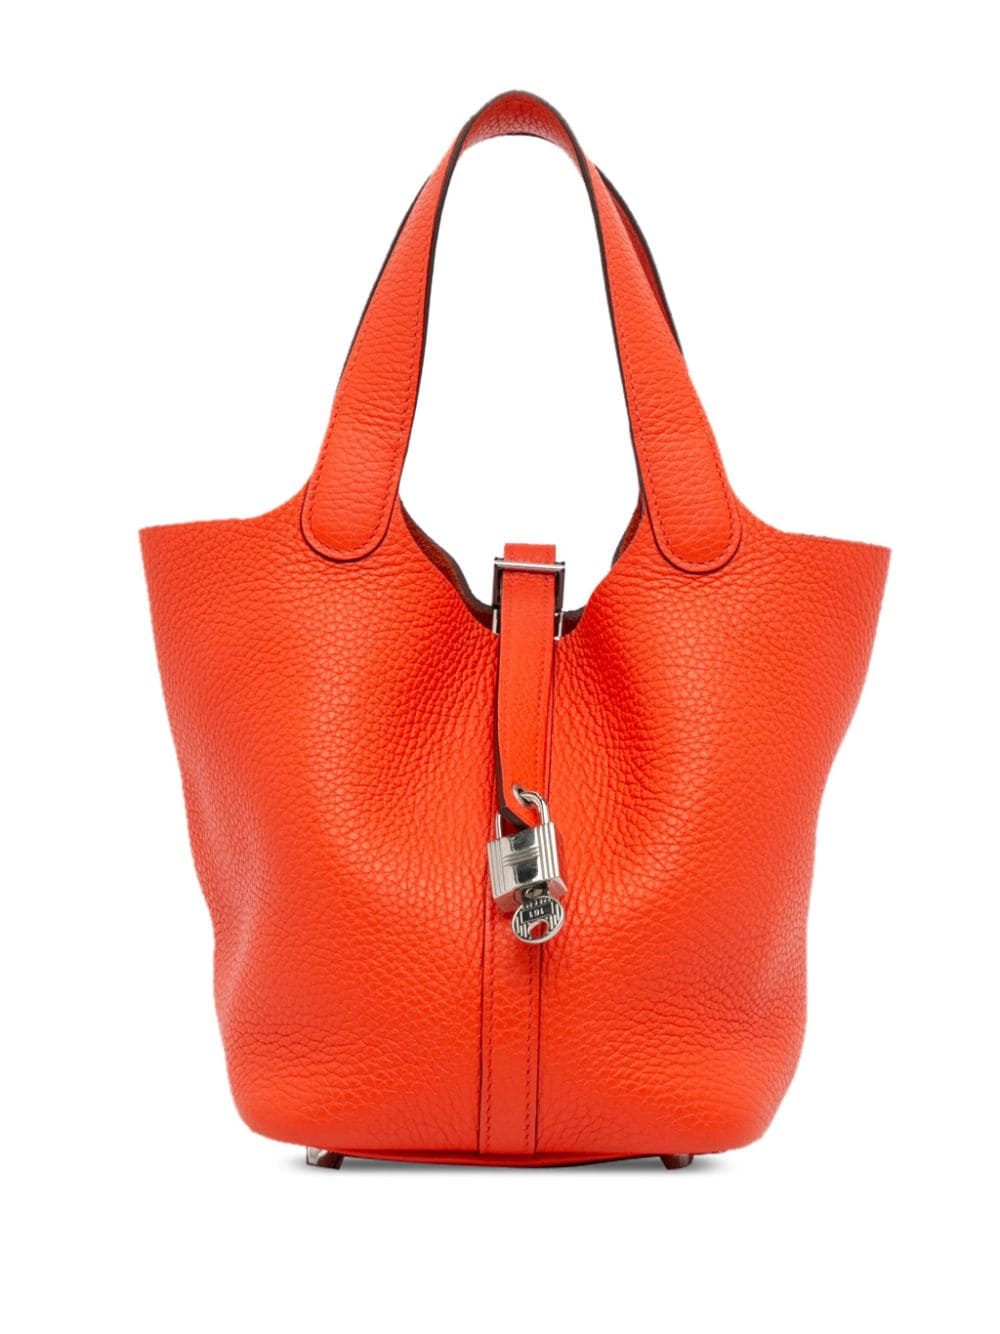 2016 Taurillon Clemence Picotin Lock 18 handbag